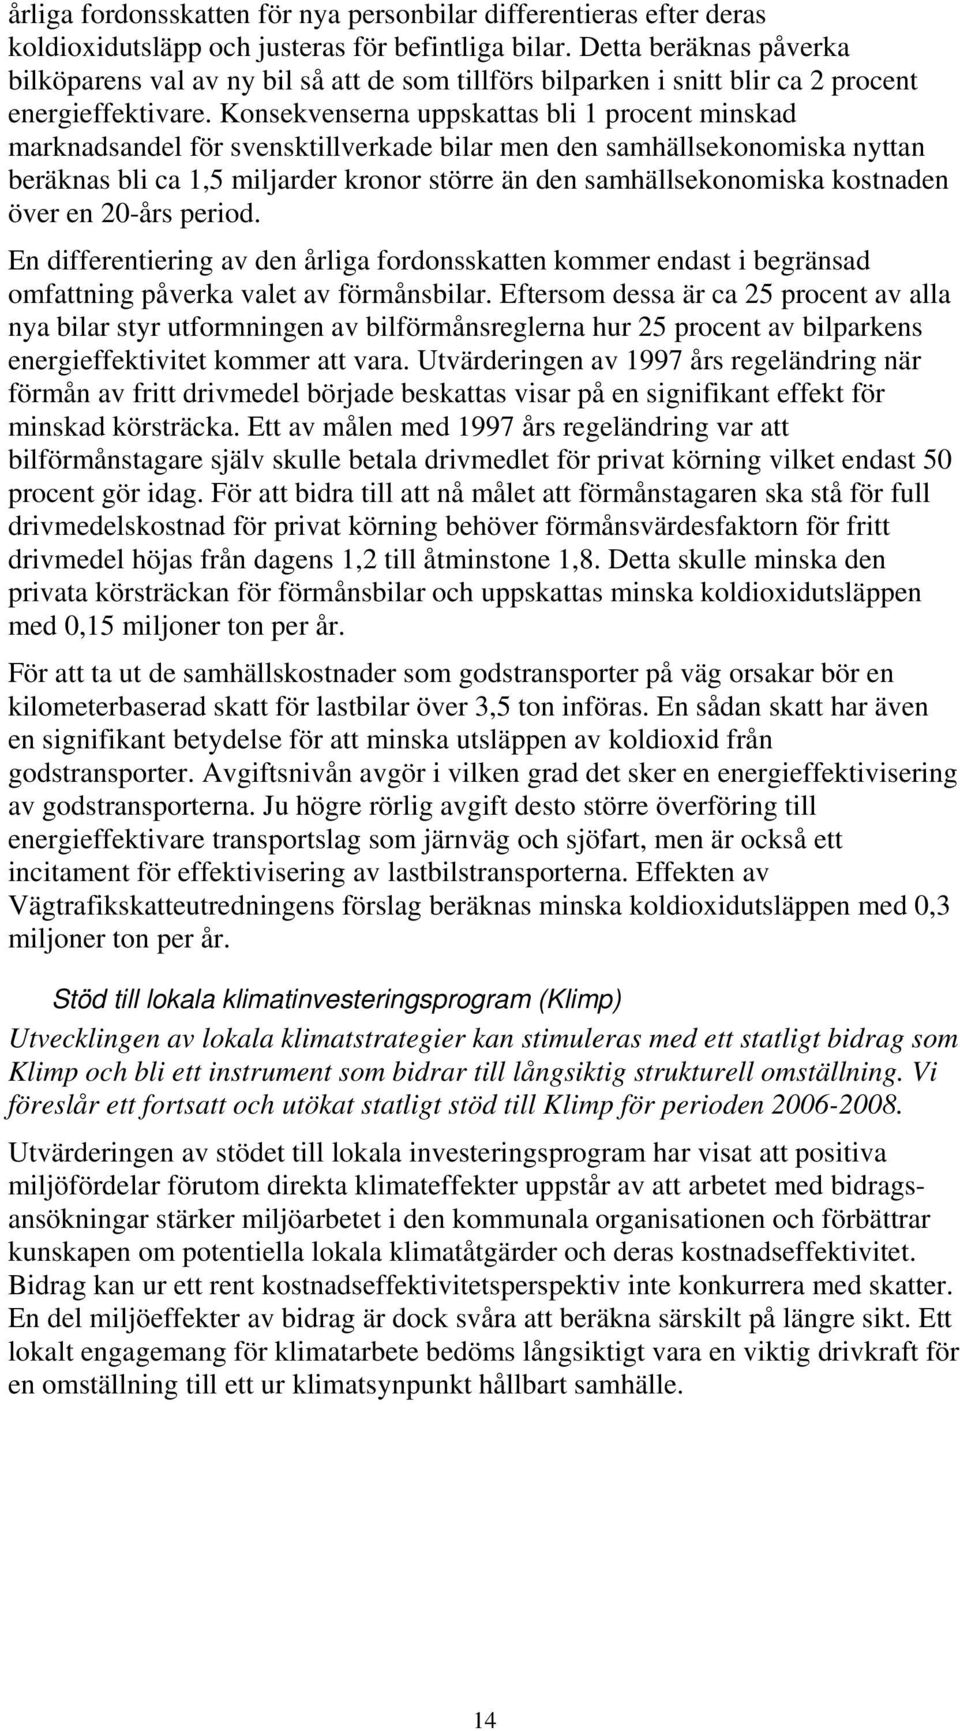 Konsekvenserna uppskattas bli 1 procent minskad marknadsandel för svensktillverkade bilar men den samhällsekonomiska nyttan beräknas bli ca 1,5 miljarder kronor större än den samhällsekonomiska